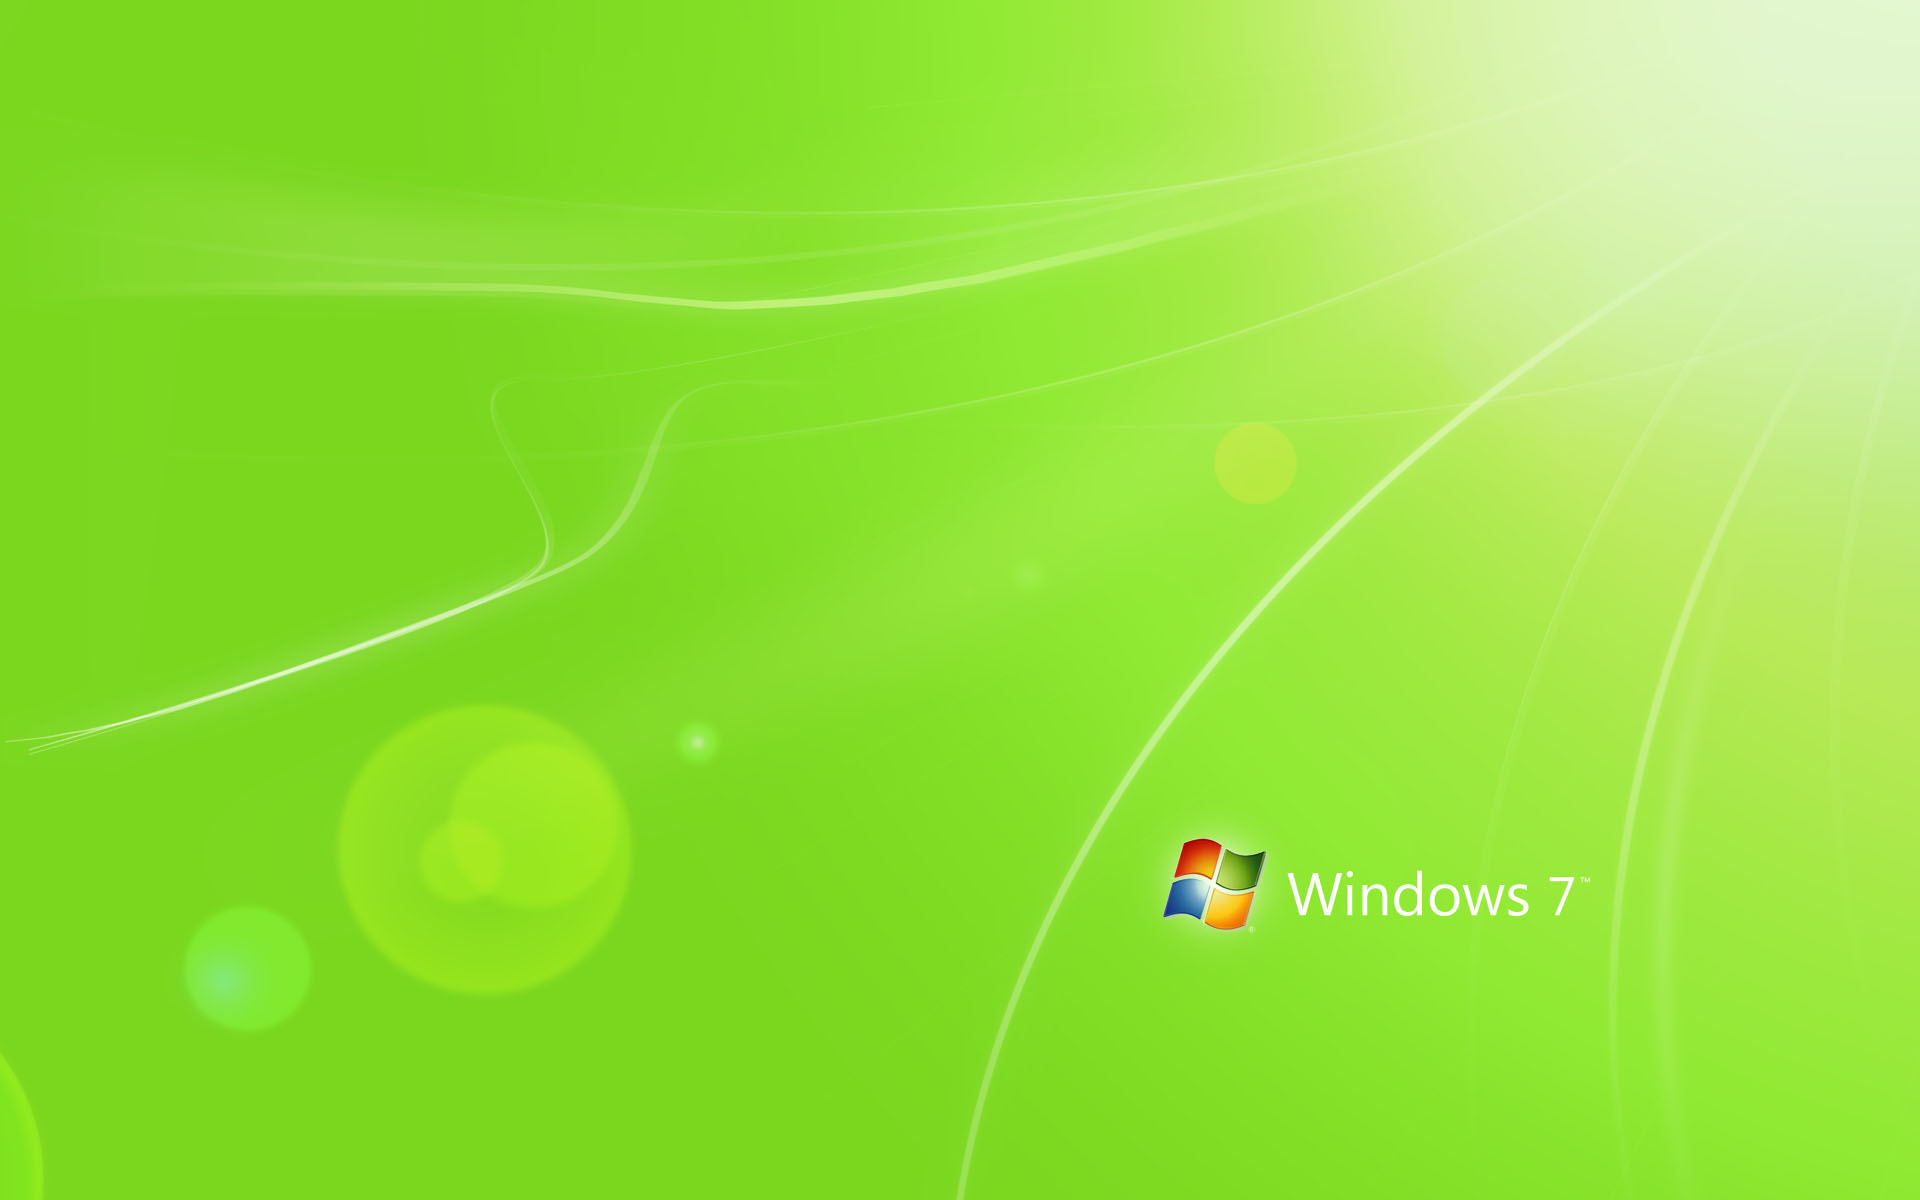 Green Windows 7722206393 - Green Windows 7 - Windows, green